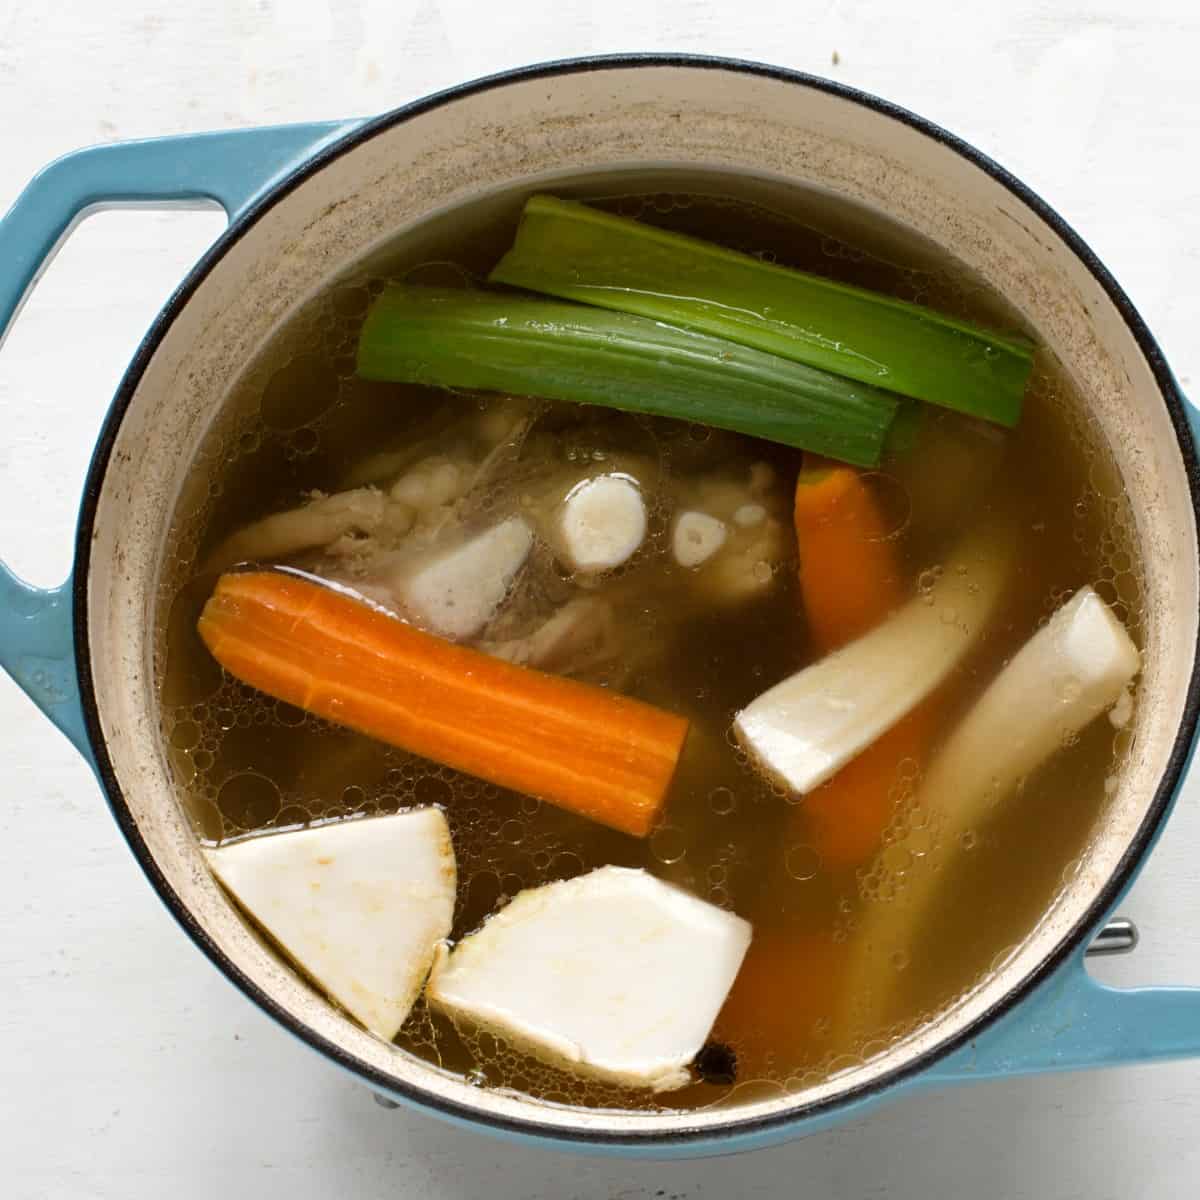 Přidání zeleniny do hovězí polévky.